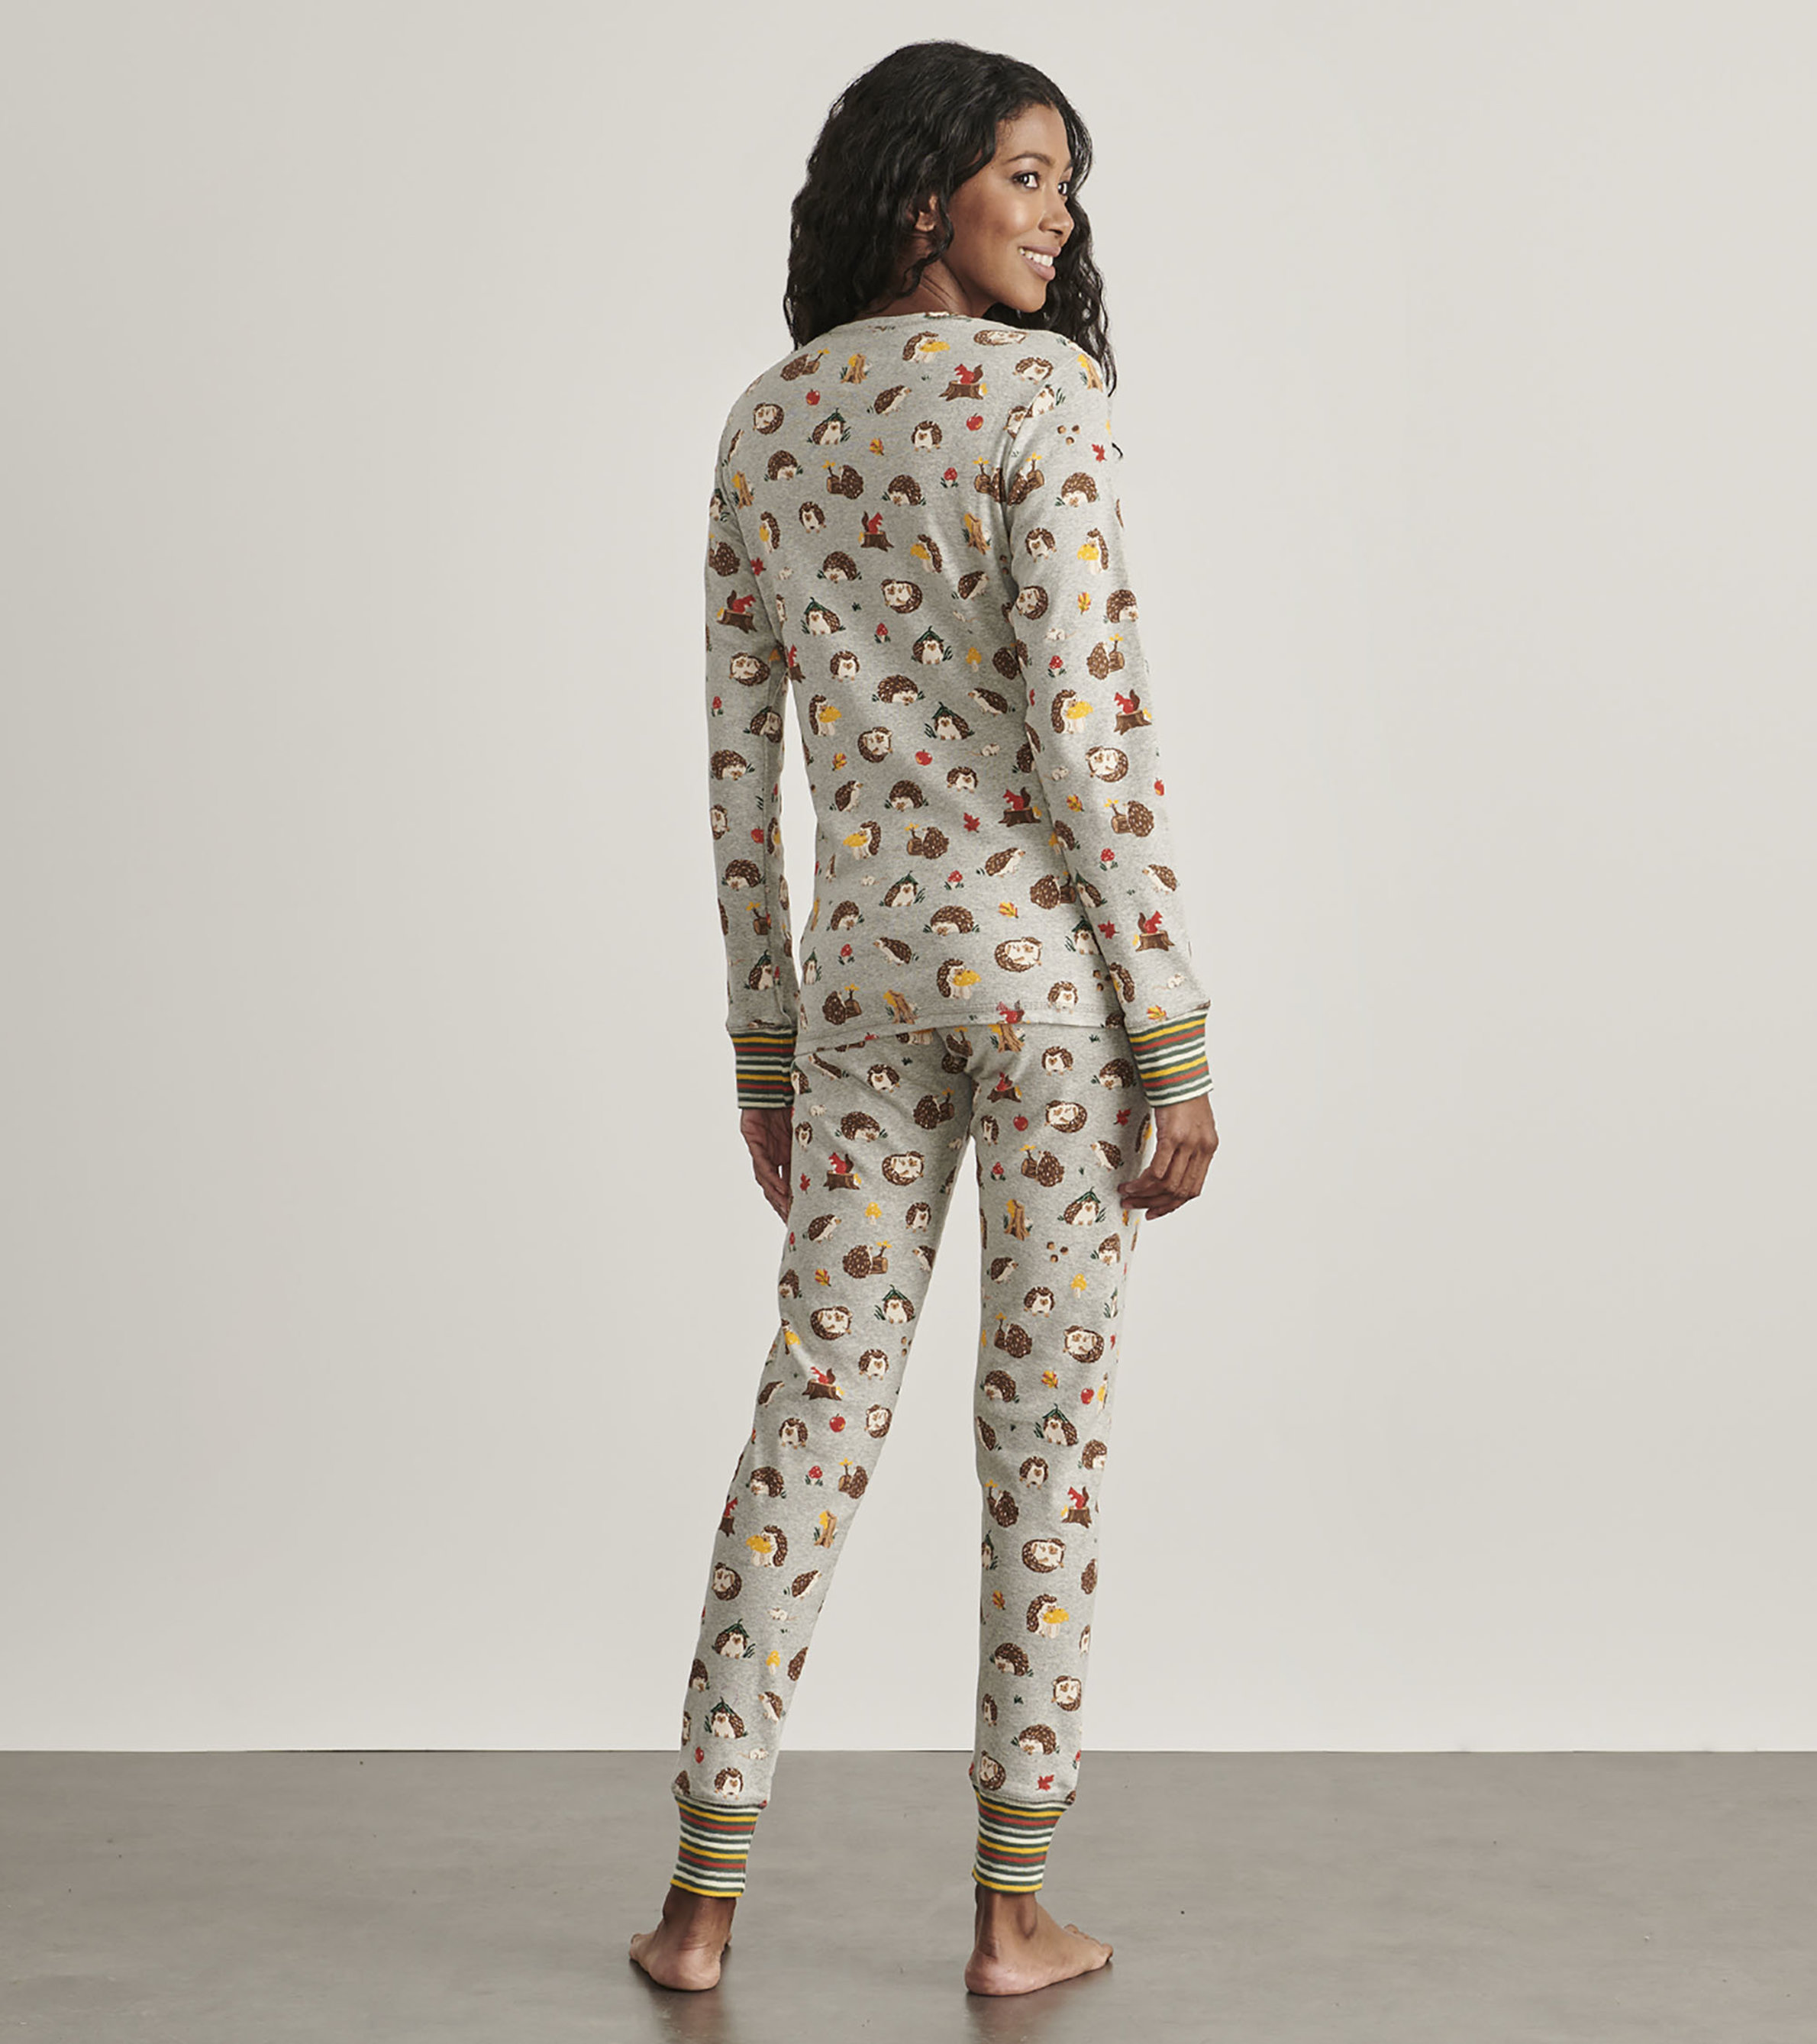 Women's Cotton Pyjamas Sets UK  Pajama Village – Pajama Village UK